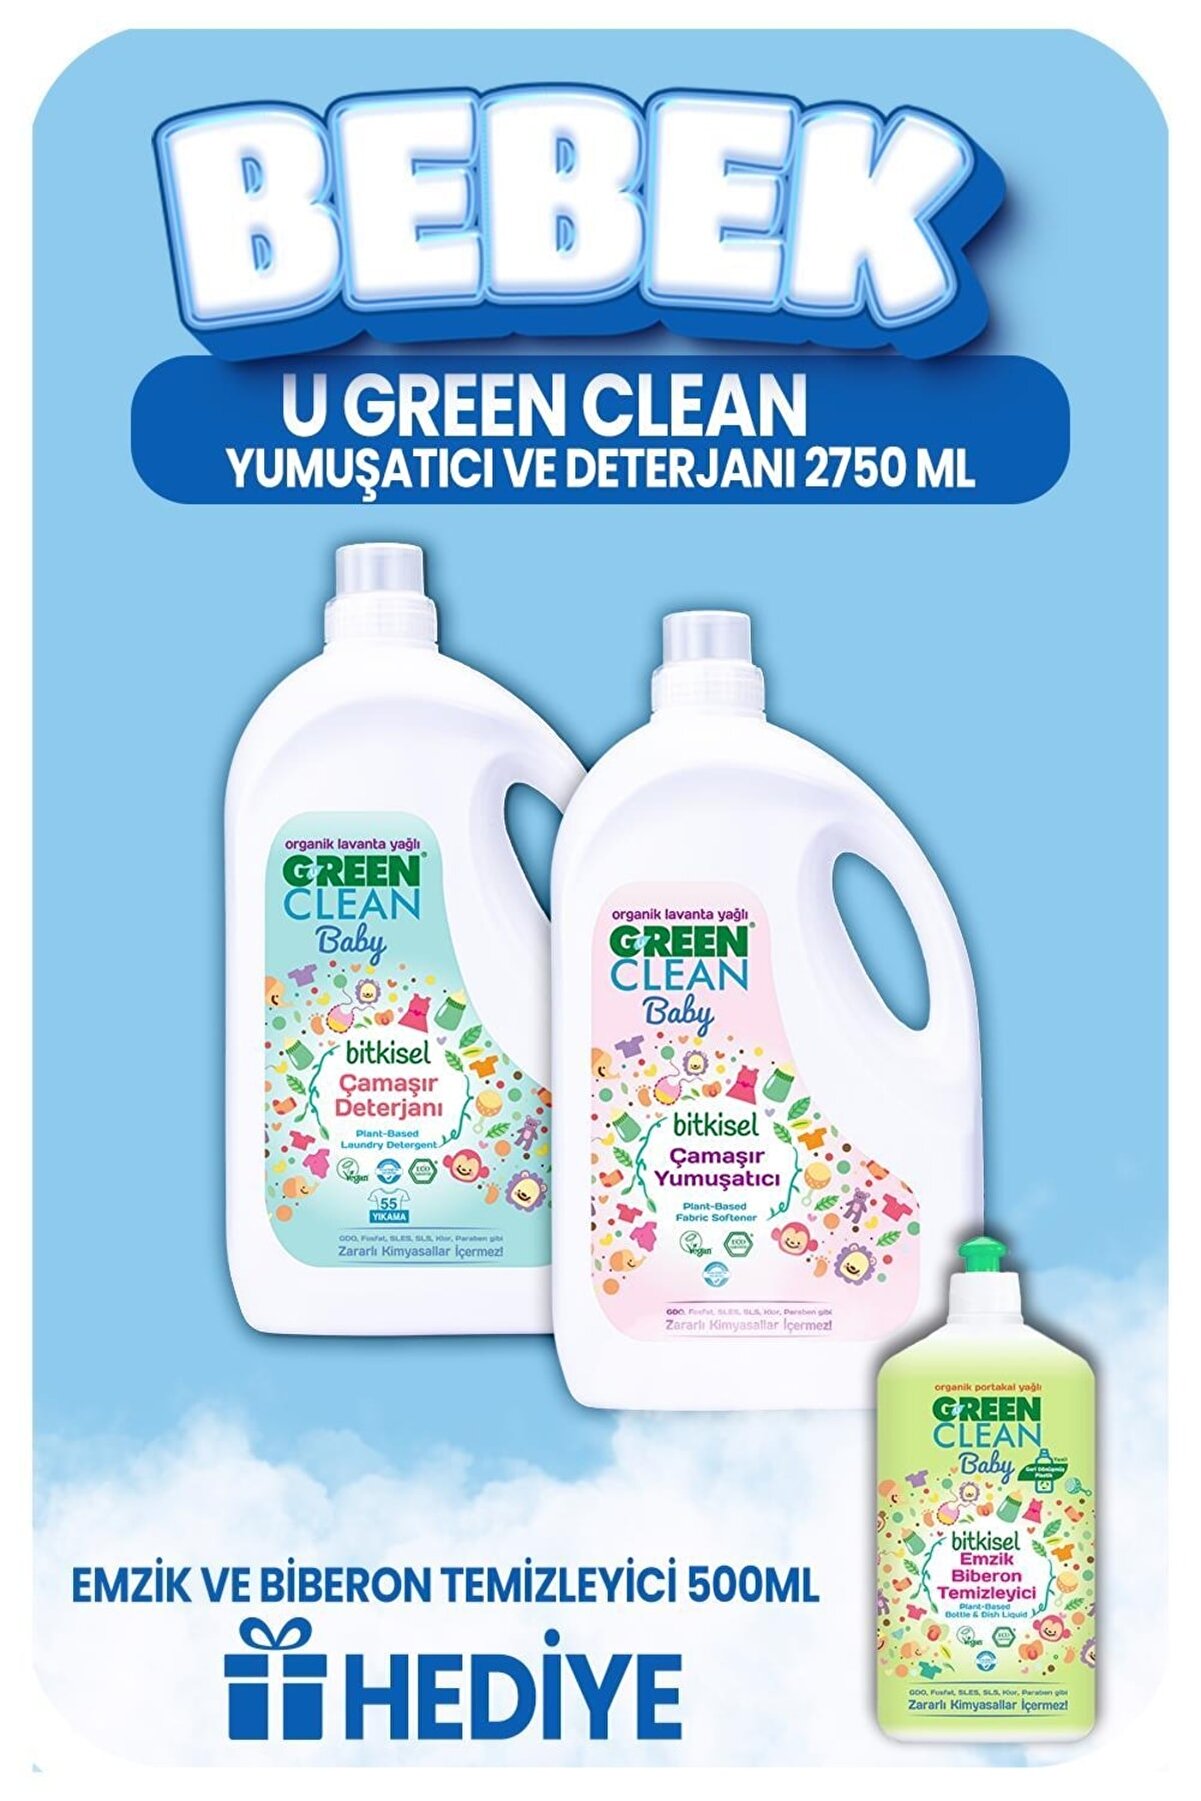 Green Clean Bebek Çamaşır Deterjanı Ve Yumuşatıcı 2750 Ml, Emzik Temizleyici Hediye